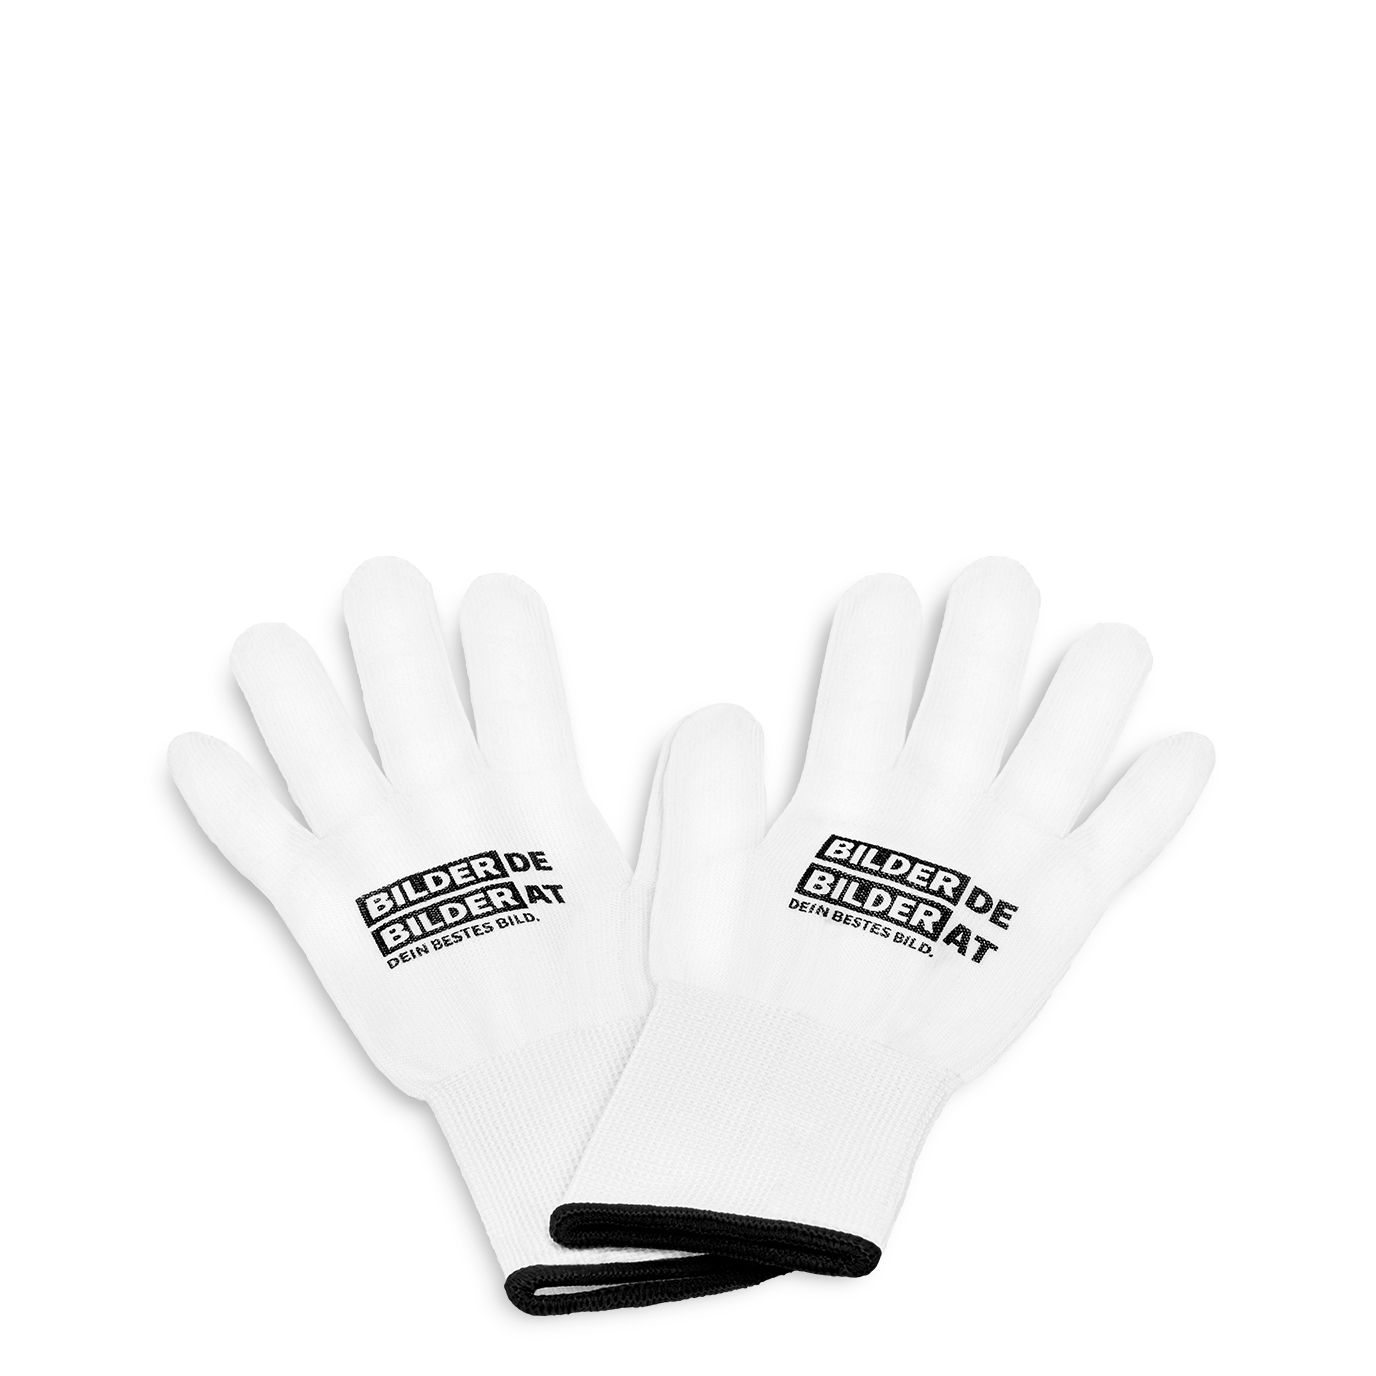 Fingerabdruck Schutz-Handschuhe